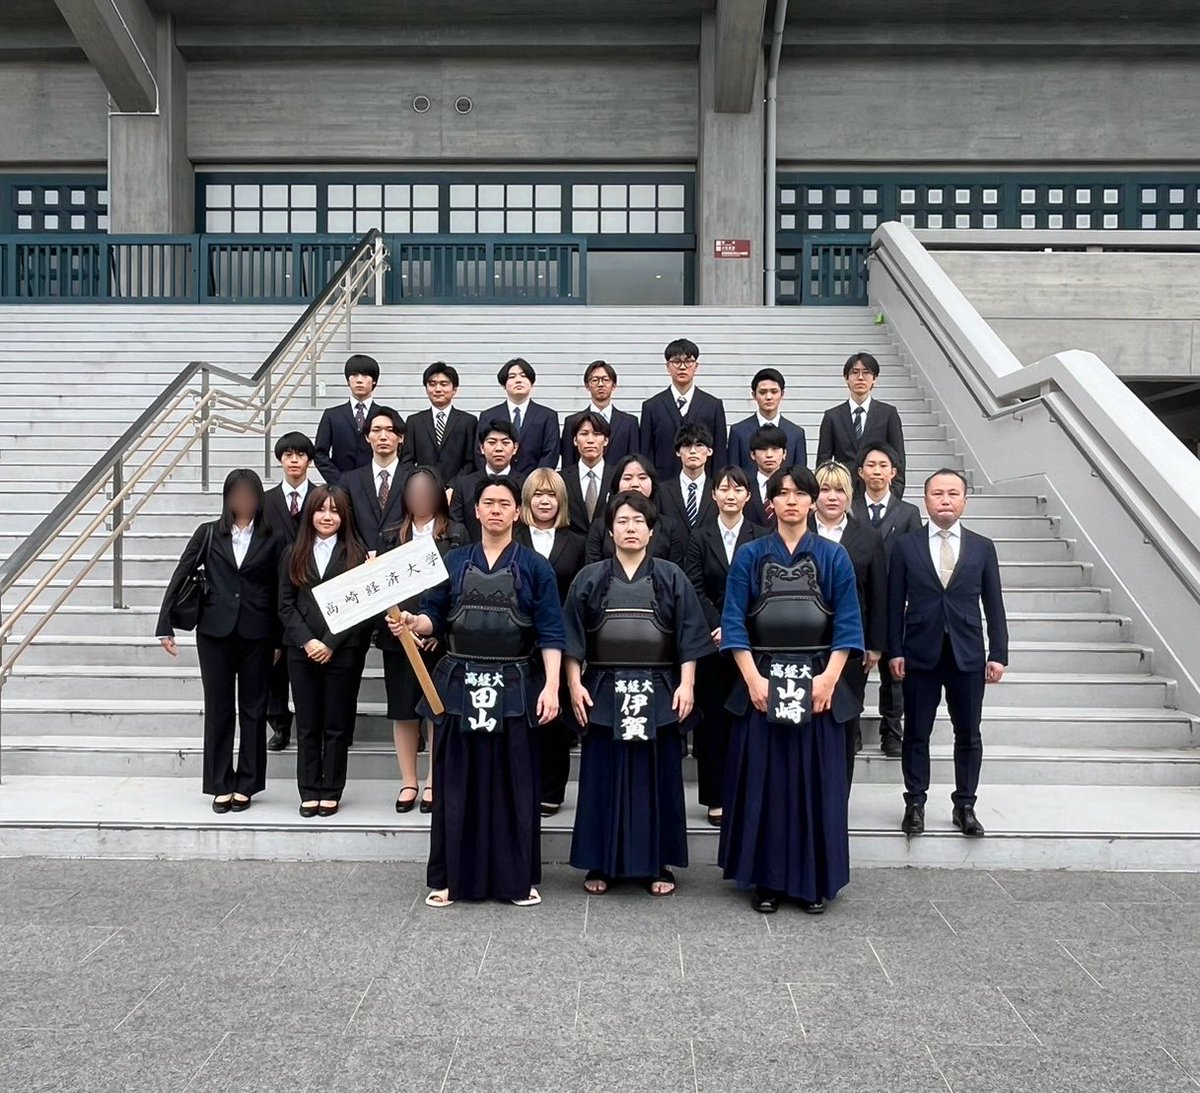 5月12日に第70回関東学生剣道選手権大会が日本武道館にて開催されました。本学からは3名の選手が出場いたしましたが、惜しくも全日本選手権への出場を逃すこととなりました。この悔しさを力に変え、来月に行われる鶴鷹祭に向けて更なる技術向上に励んでいきます。